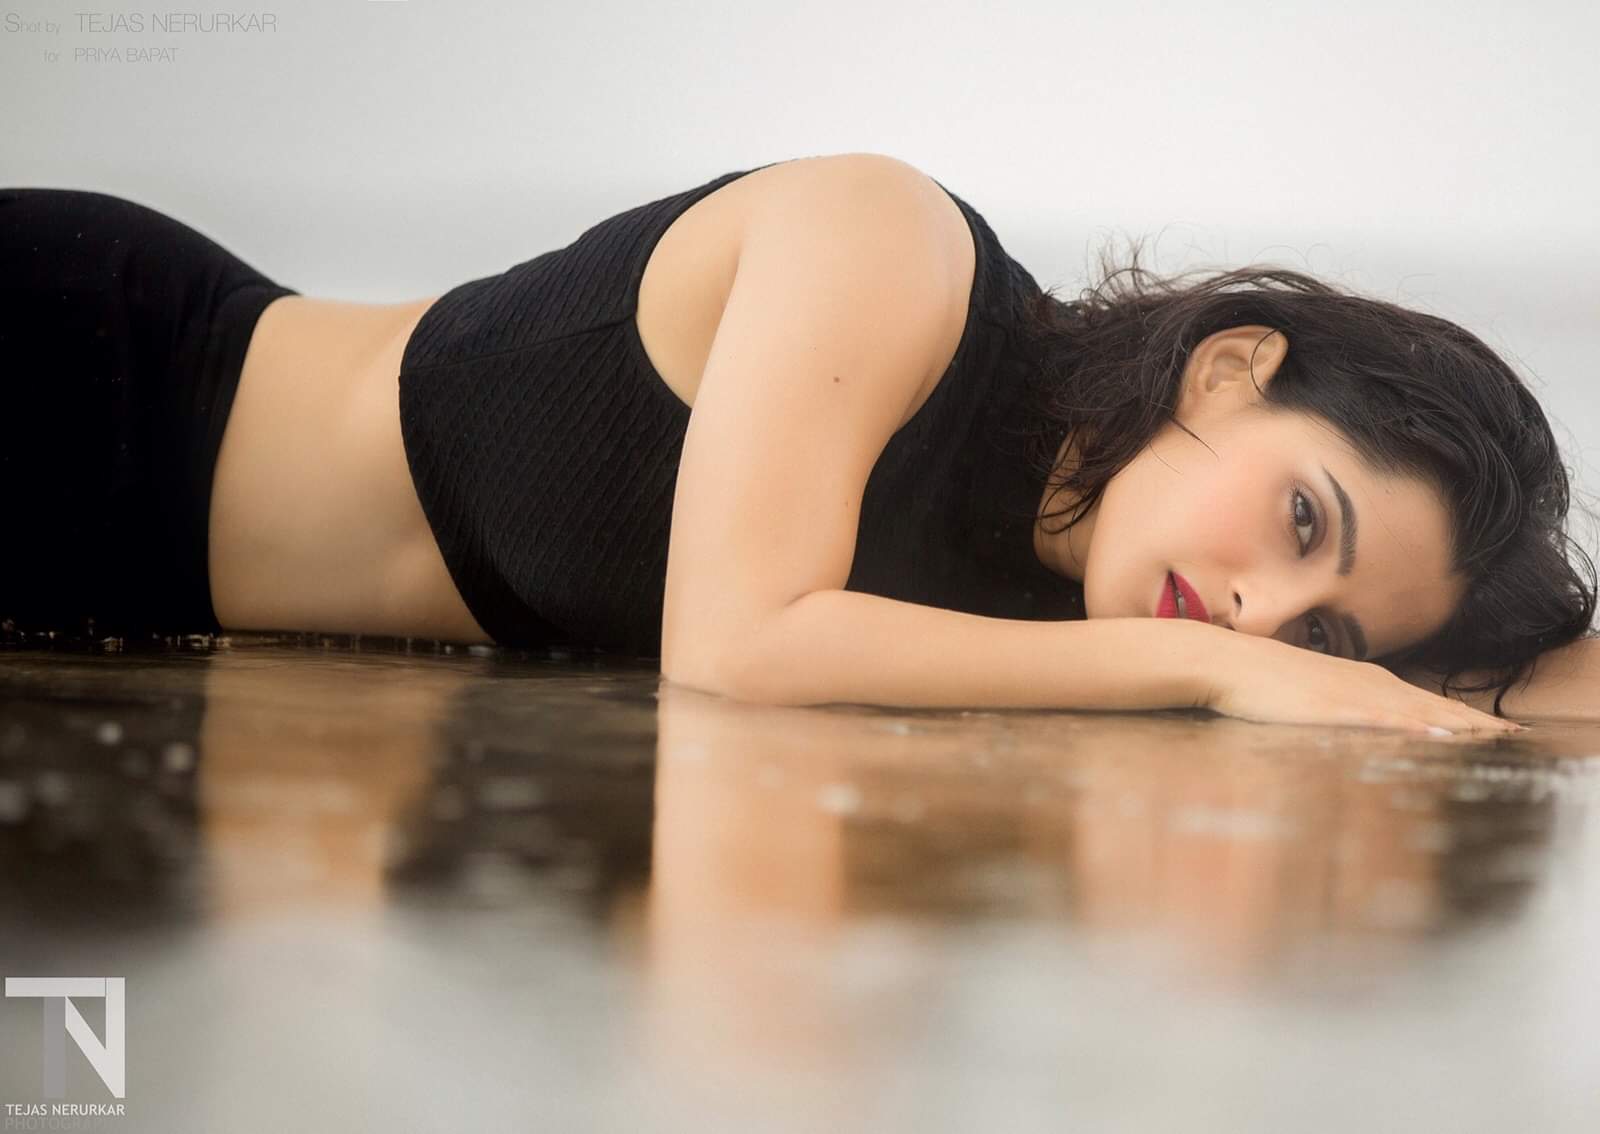 Shruti Marathe Nude - Priya Bapat's Spicy Photoshoot on beach - à¤®à¤°à¤¾à¤ à¥€shoots